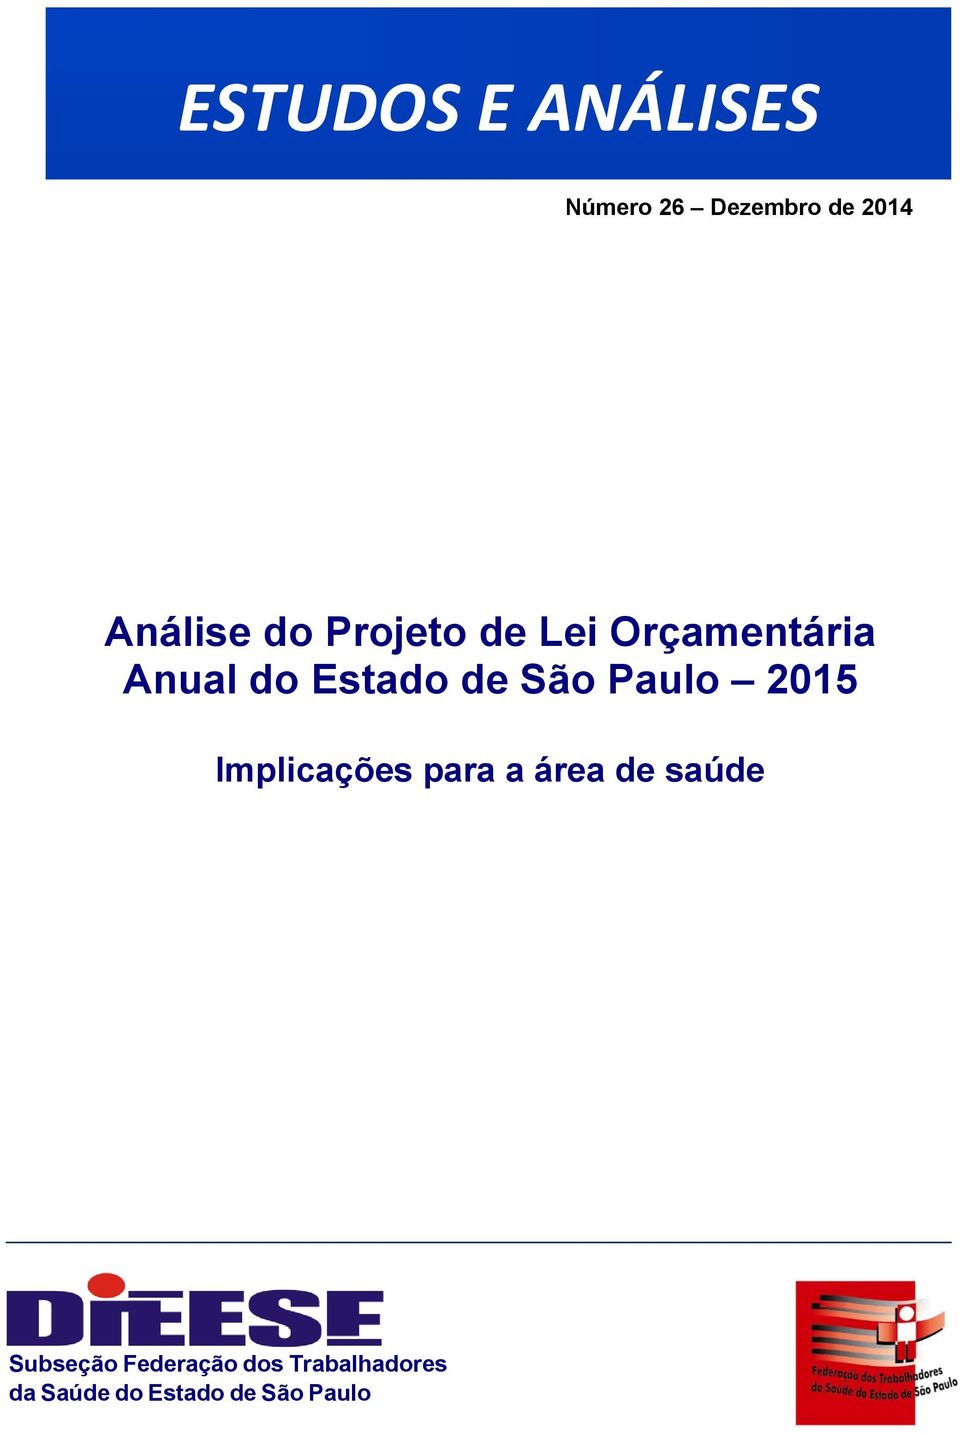 Paulo 2015 Implicações para a área de saúde Subseção